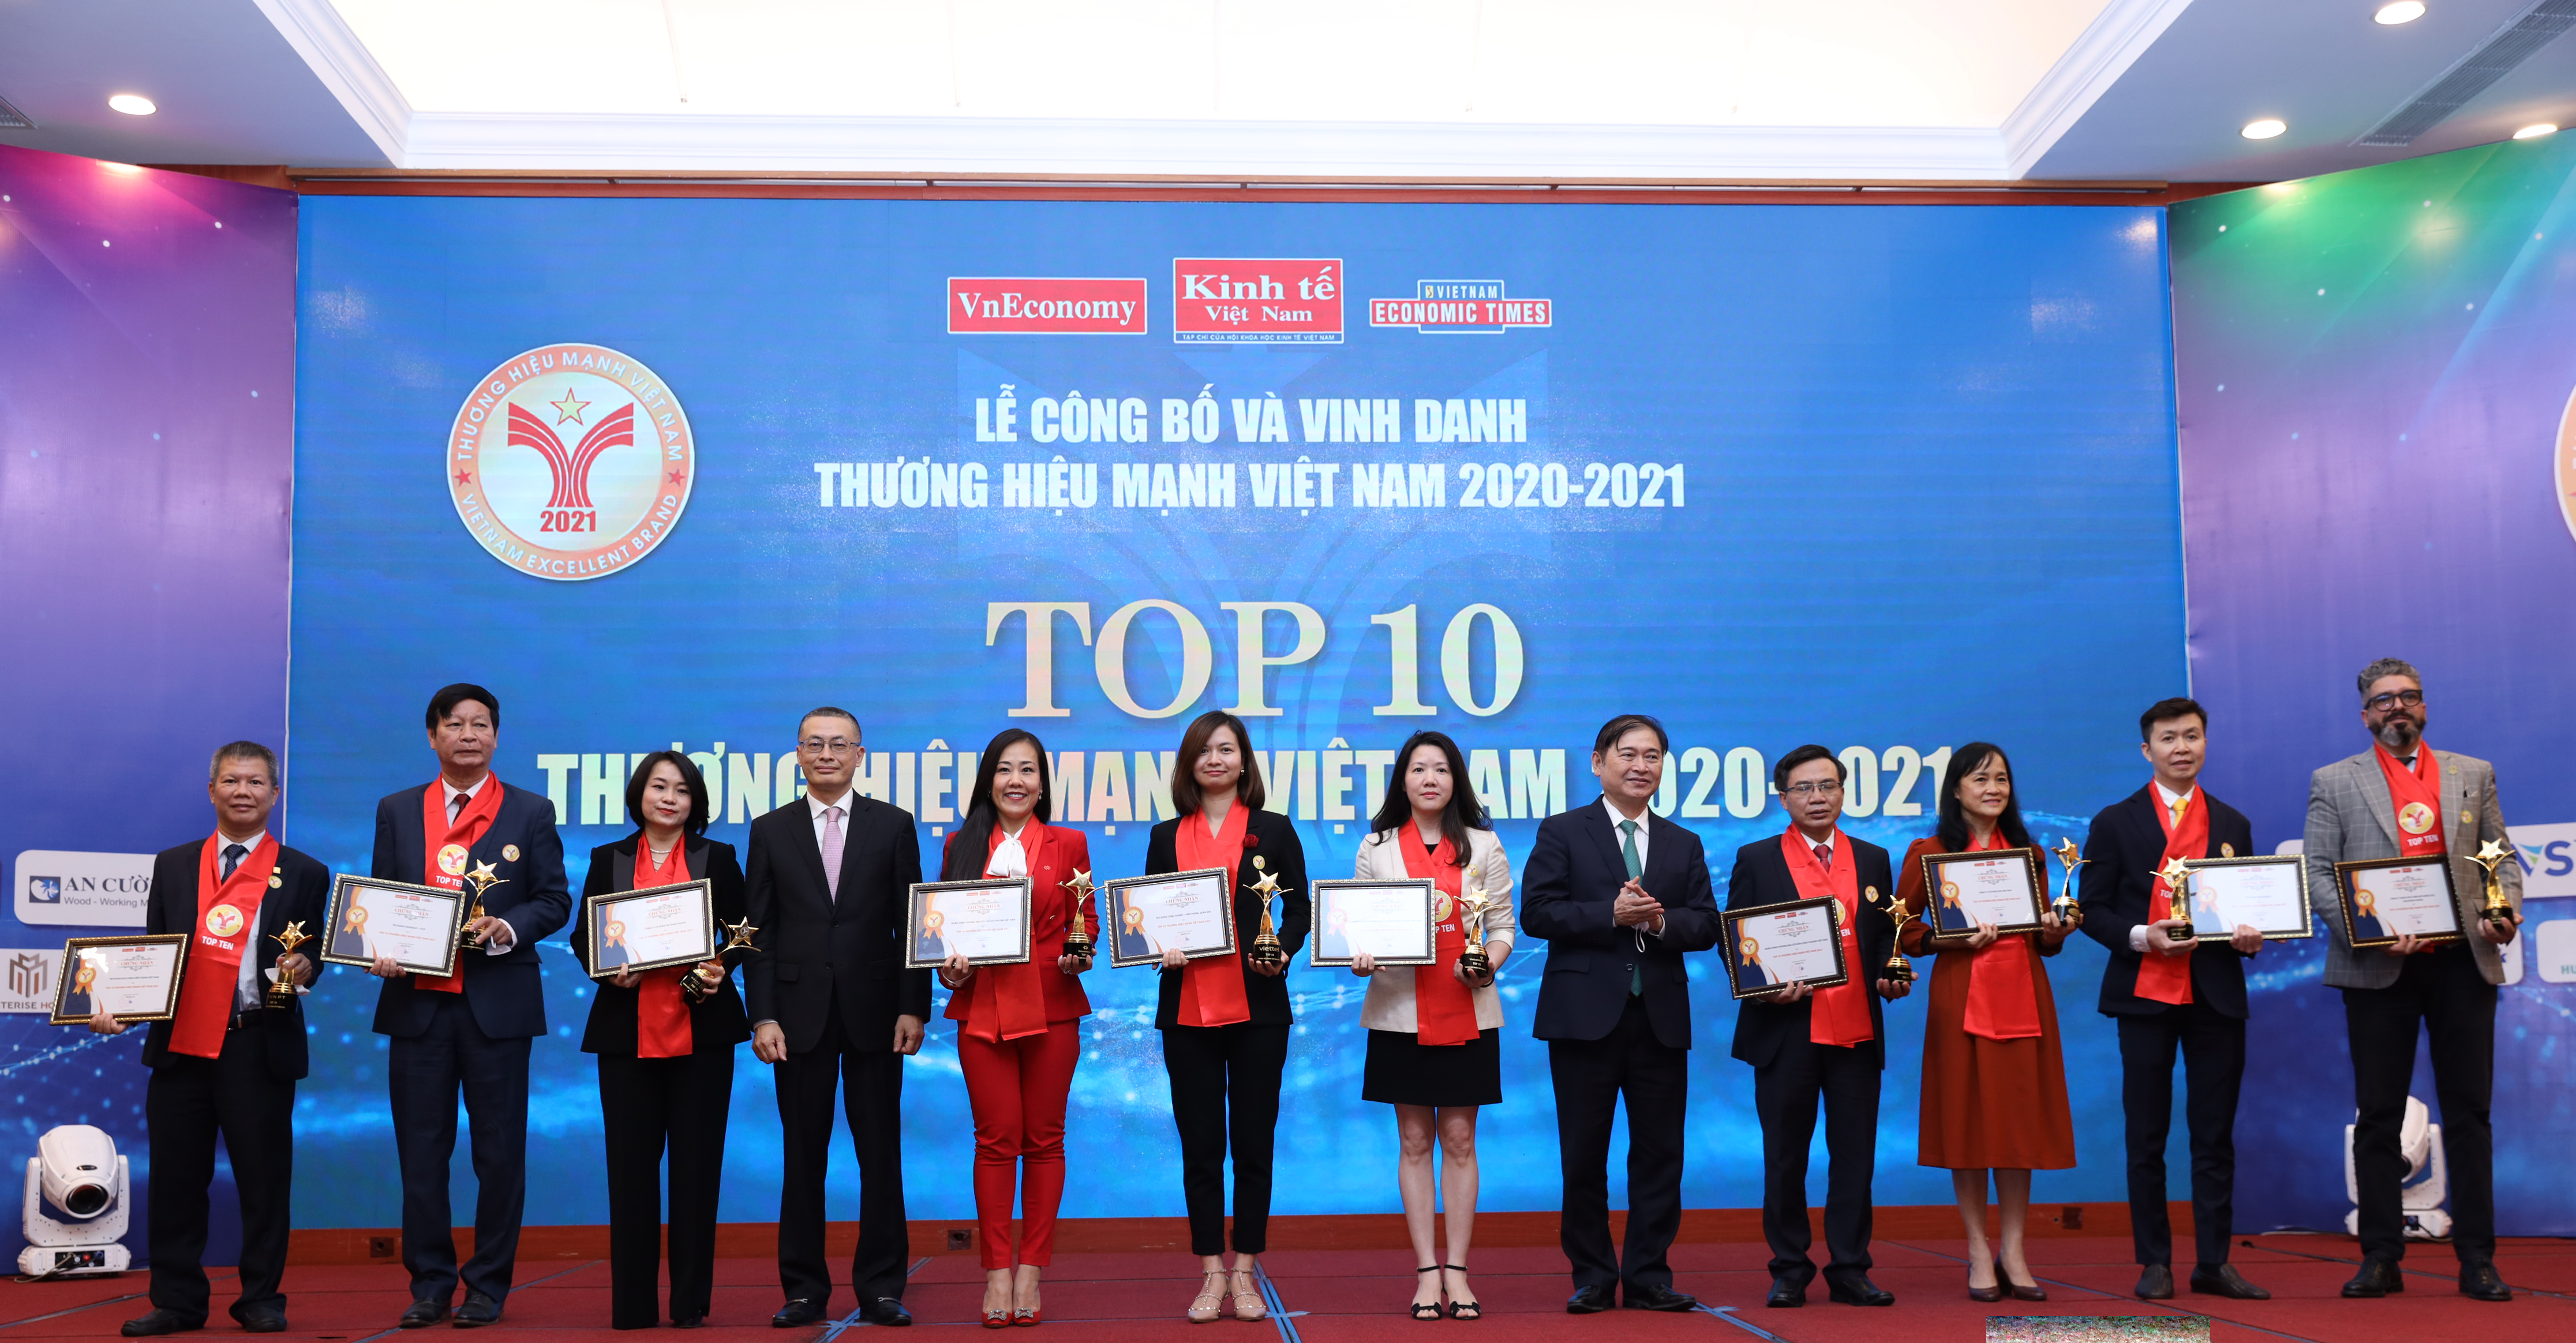 TOP 10 Thương hiệu Mạnh Việt Nam năm 2020 - 2021 có tên các thương hiệu: Viettel, Vietcombank, VietinBank, Techcombank, VinGroup, Masan, Vinamilk, VNPT, SunGroup và Masterise Homes.